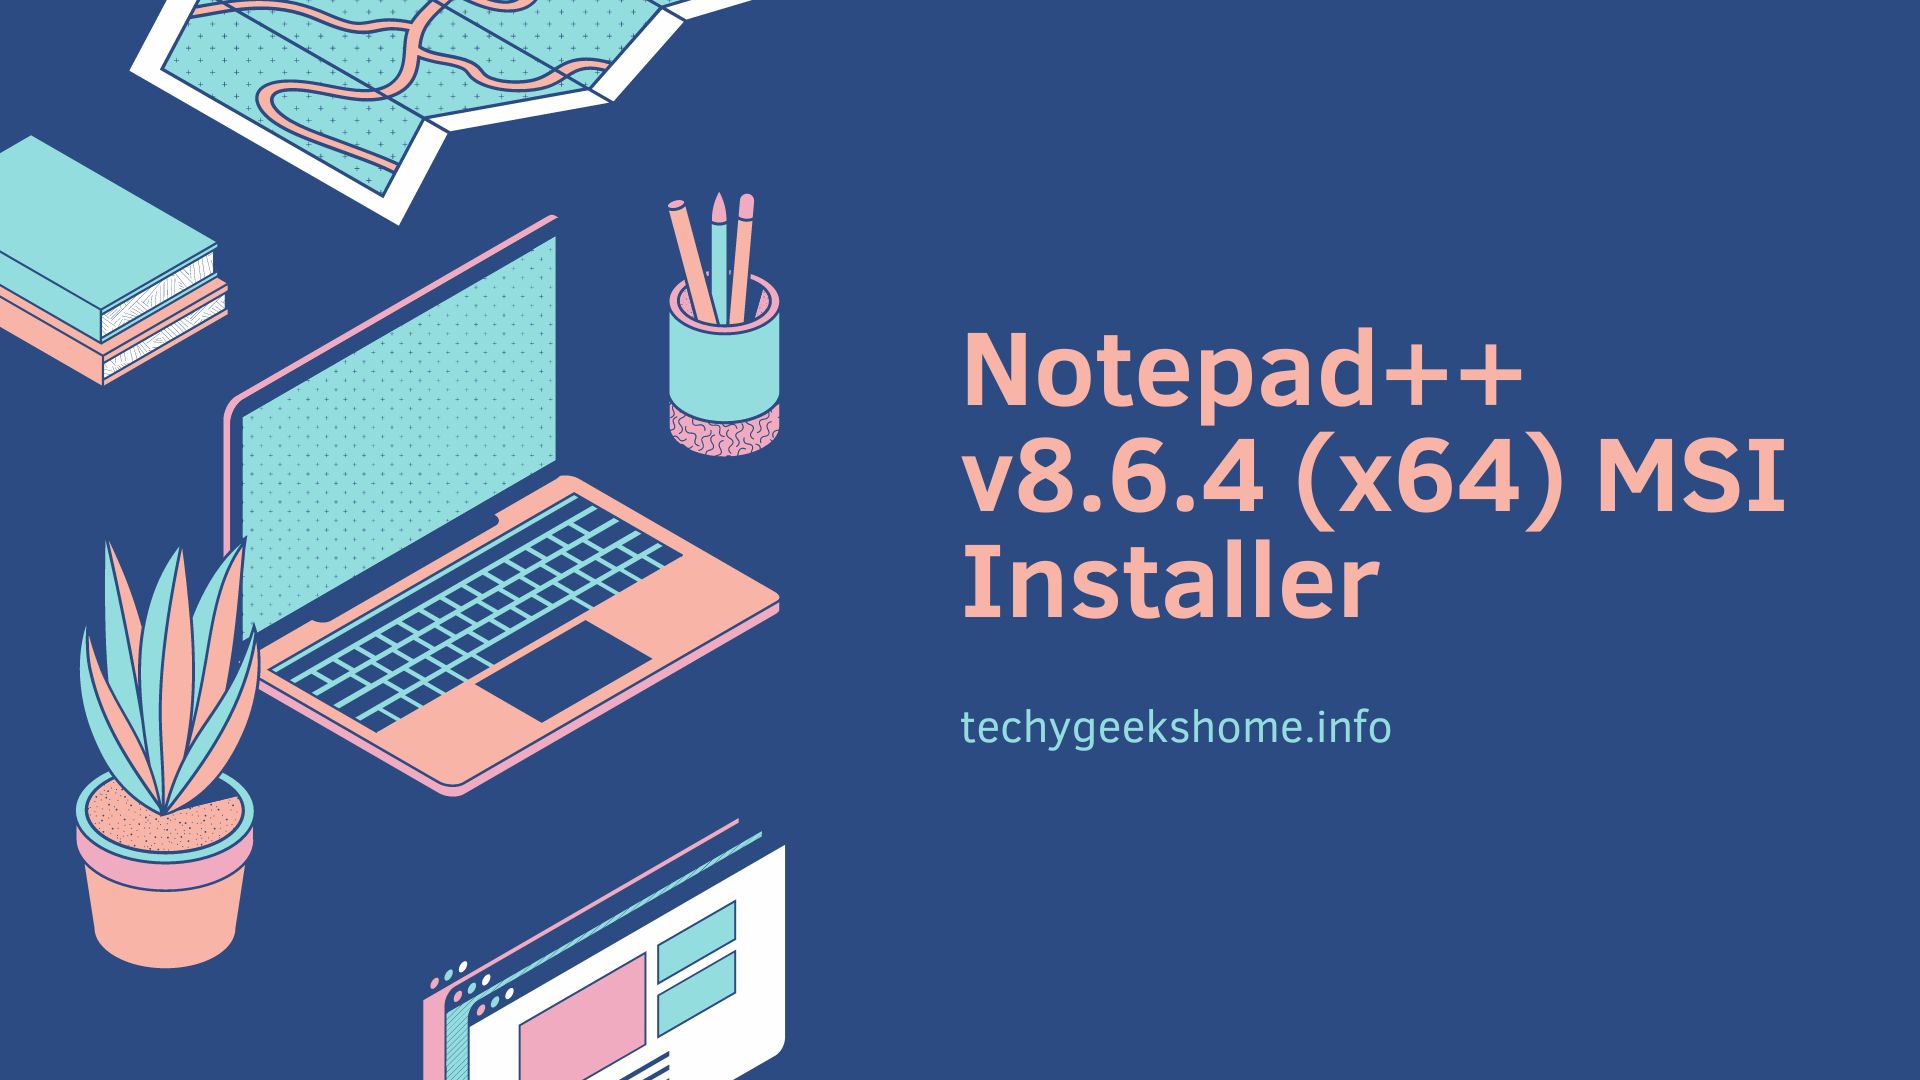 Notepad++ MSI Installer v8.6.4 (x64)